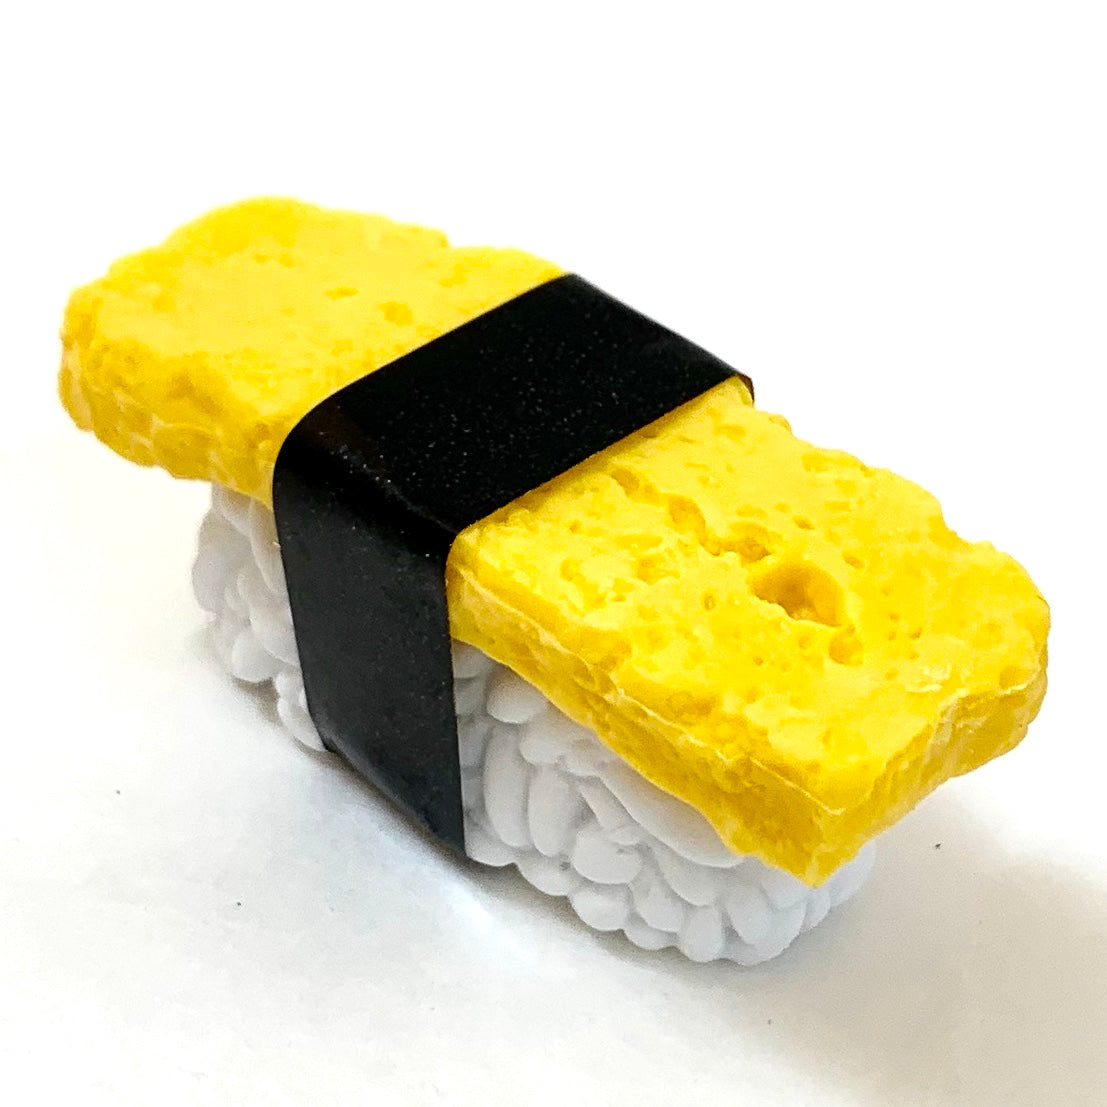 Sushi Eraser